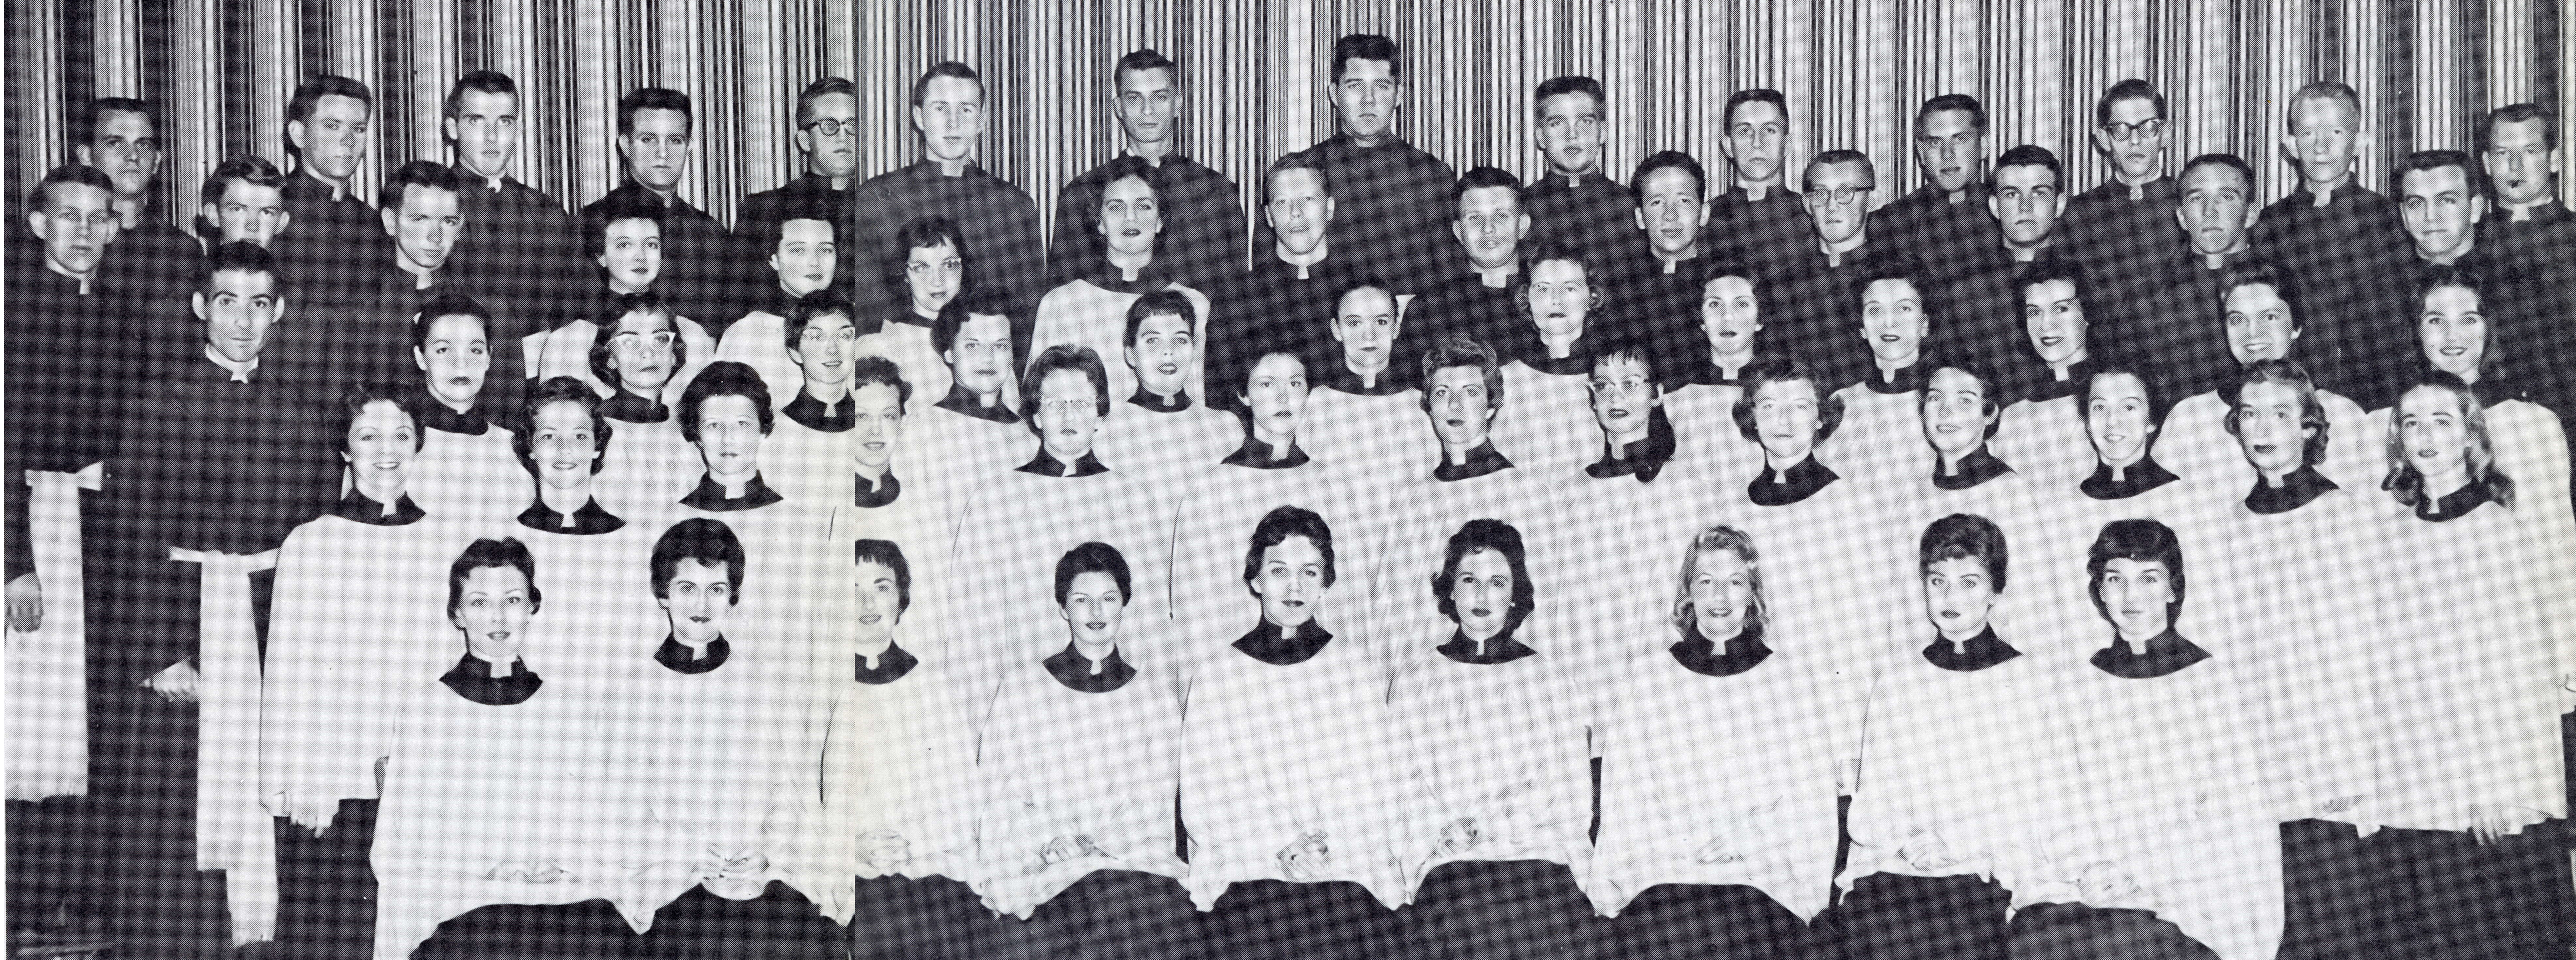 1959 Arkansas Tech Choir